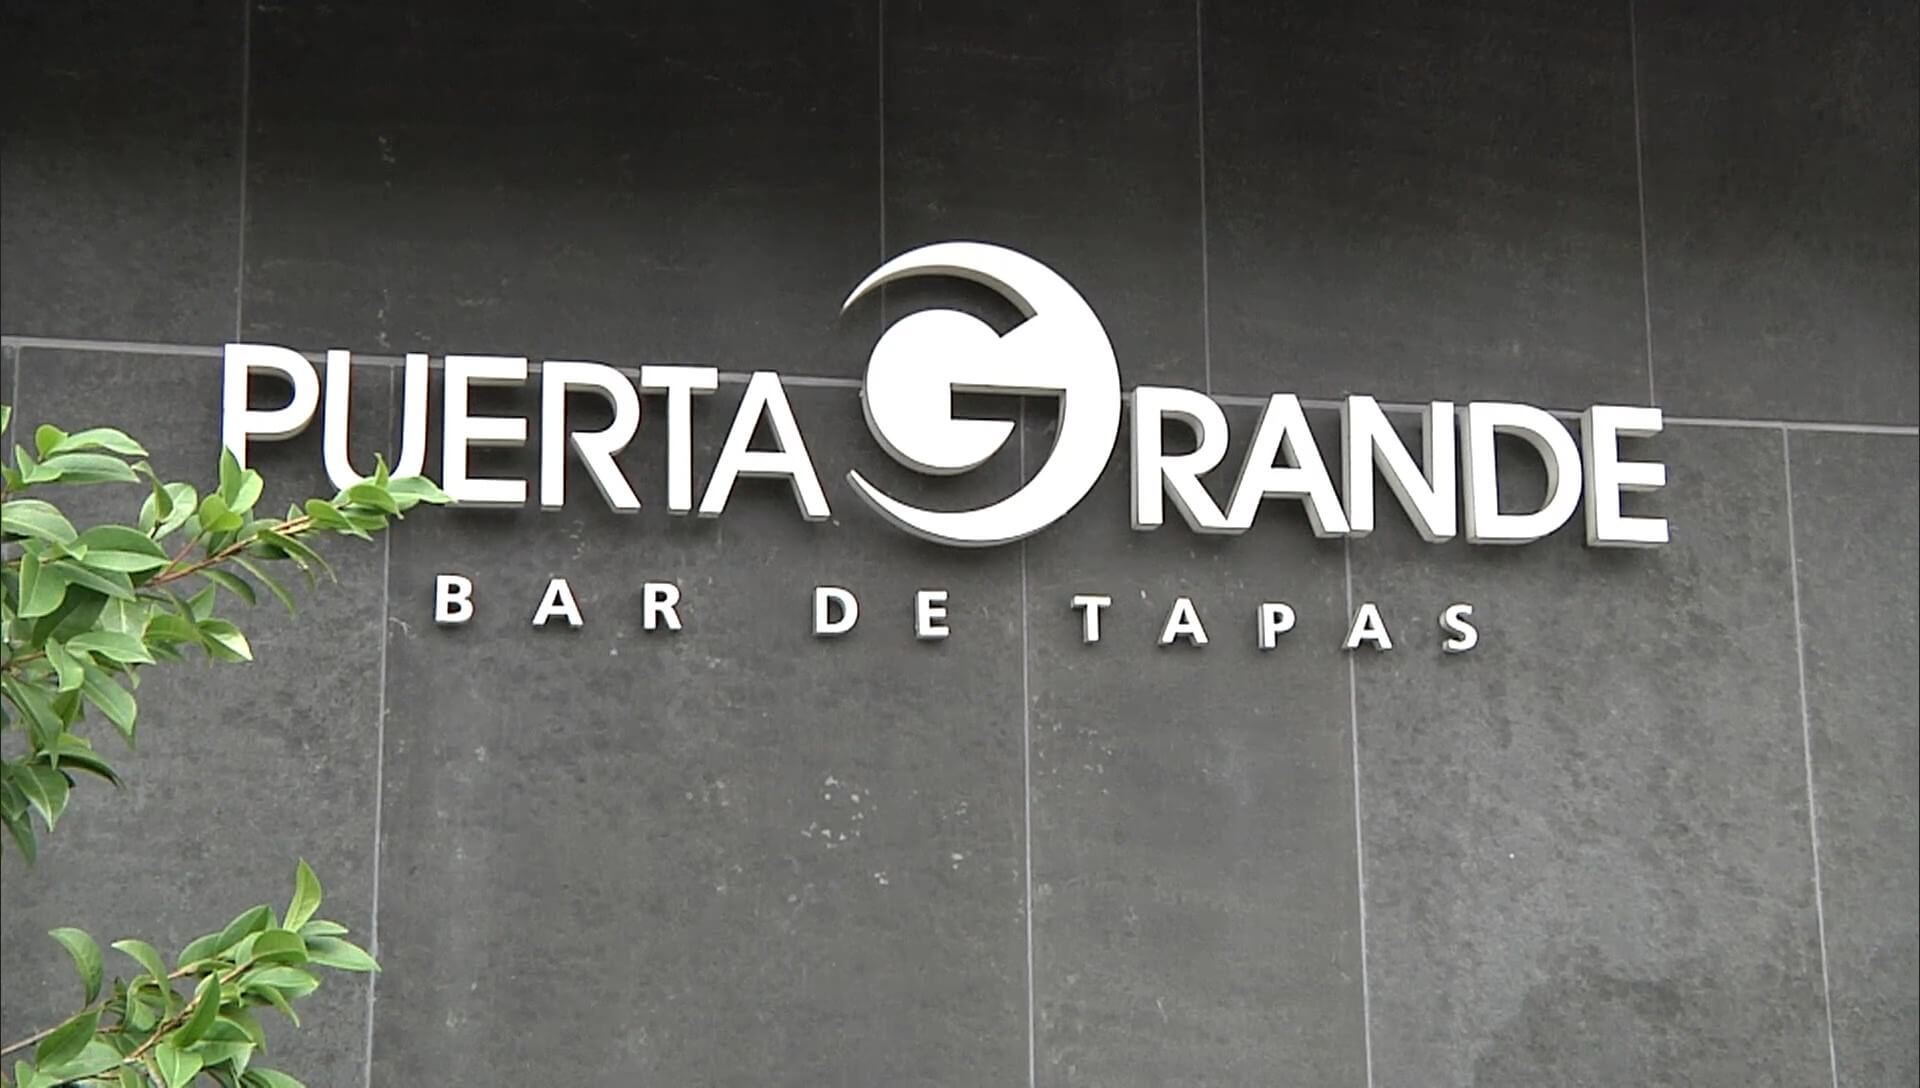  Moderno y céntrico bar restaurante de Vitoria-Gasteiz con terraza y cocina non-stop con productos de temporada y mercado.        